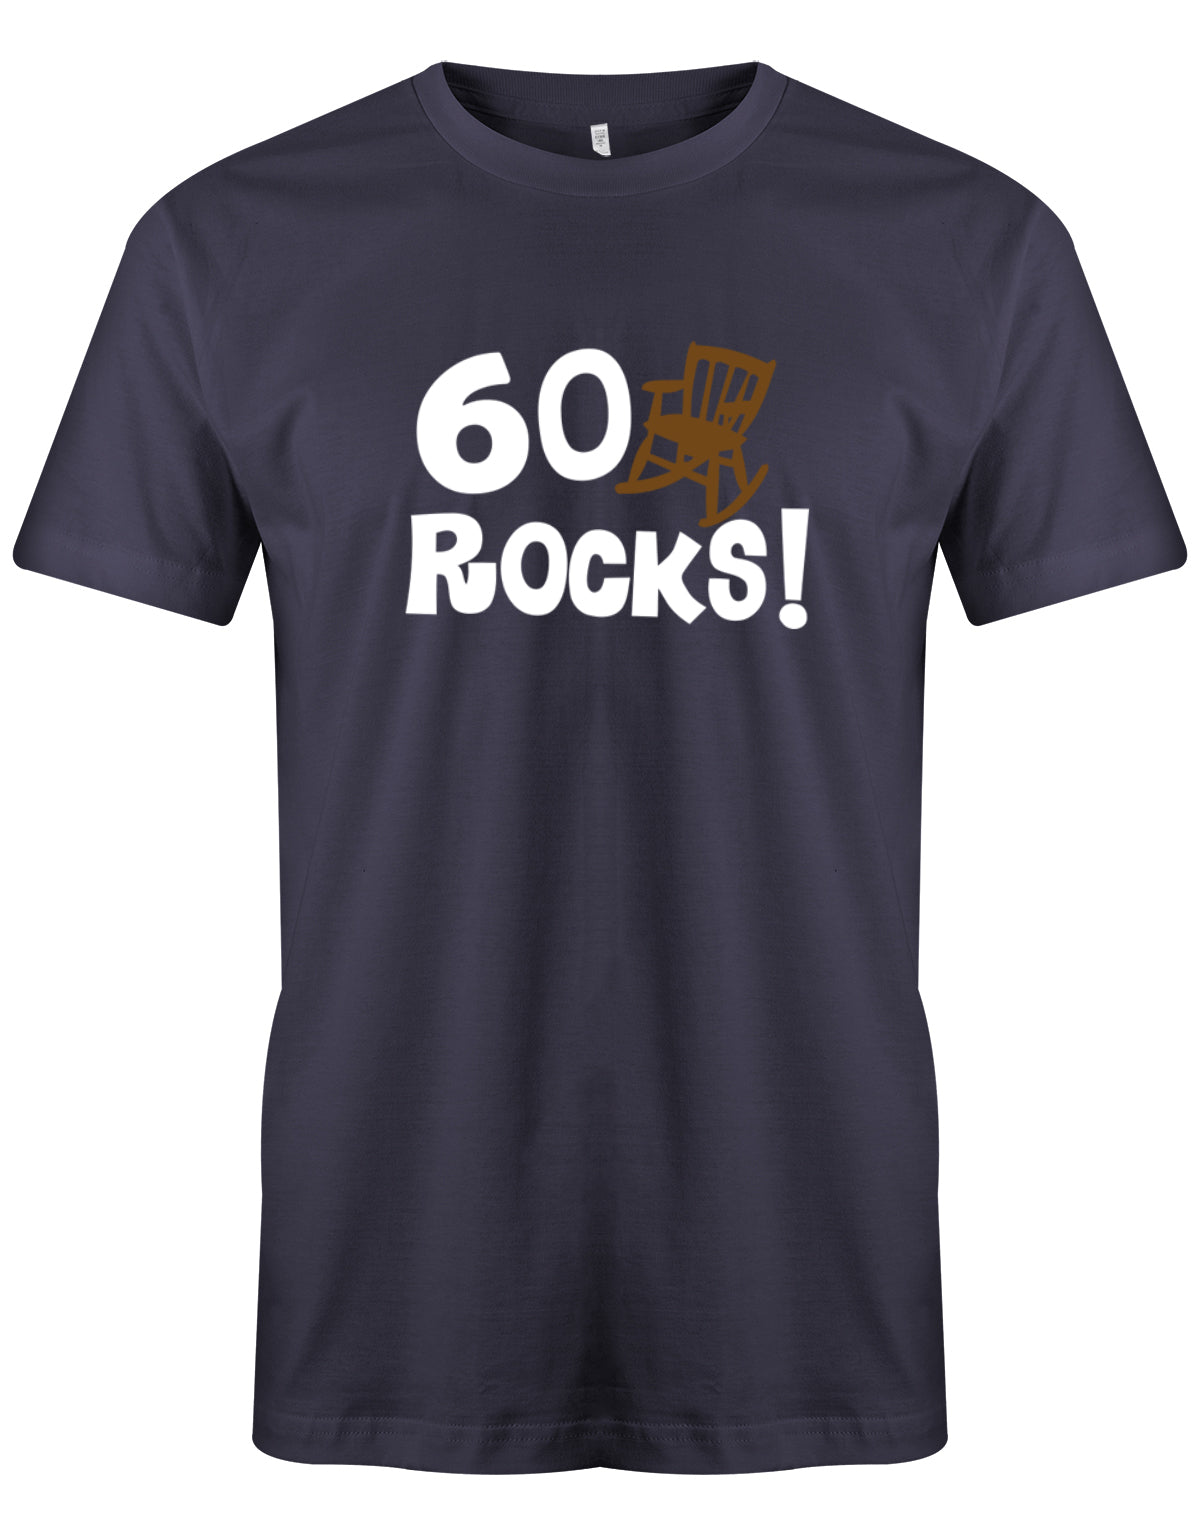 Lustiges T-Shirt zum 60. Geburtstag für den Mann Bedruckt mit 60 Rocks! Schaukelstuhl Navy